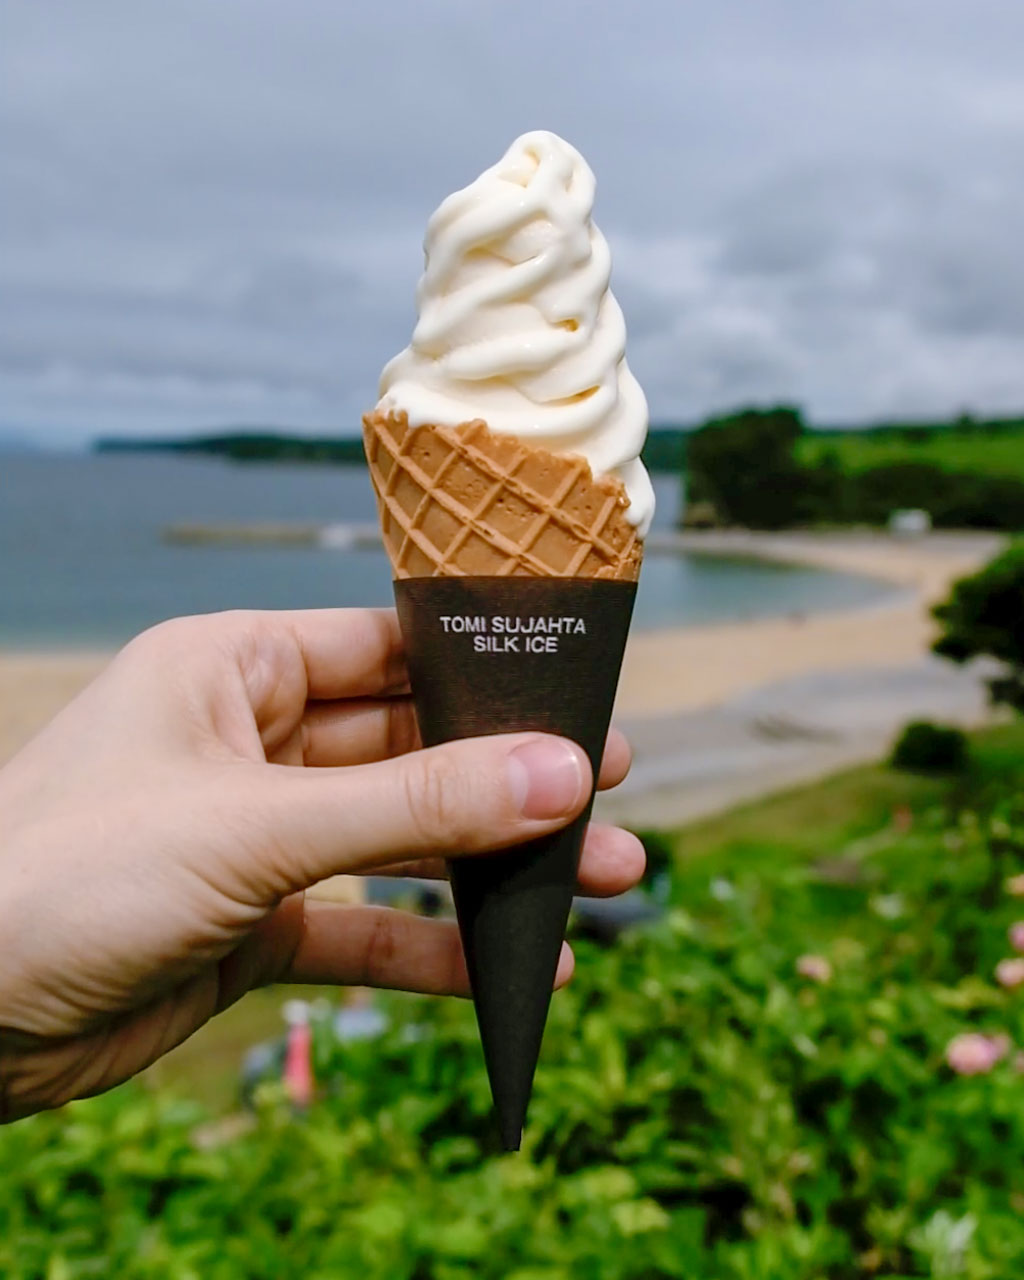 La crème glacée Nanohana du Café & Restaurant Fiore était la petite douceur parfaite pour me rafraîchir pendant cette chaude journée d'été.